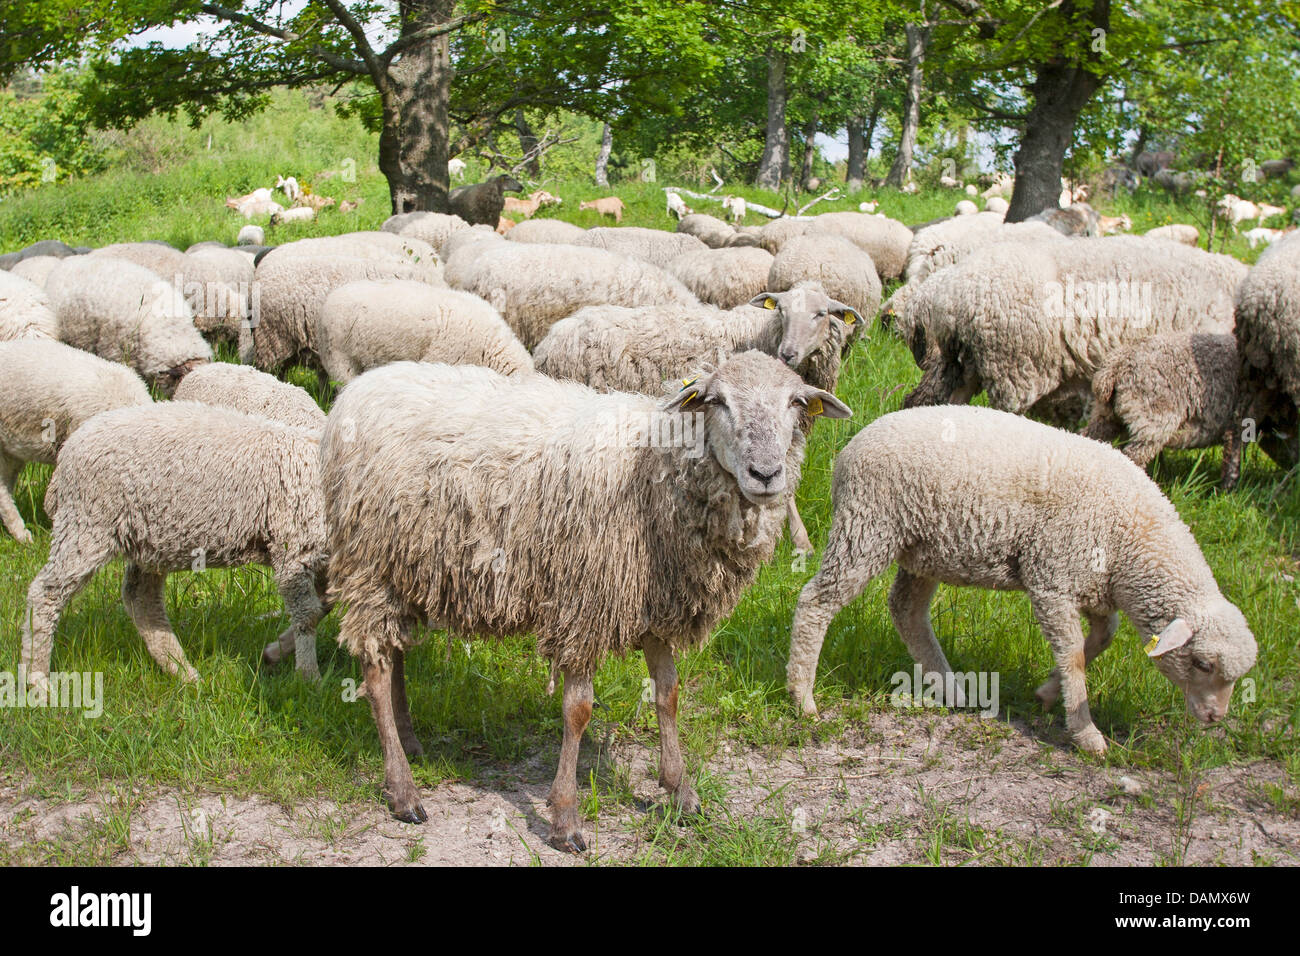 Oveja Merina (Ovis ammon f. aries), rebaño de ovejas navegando en una pradera, Alemania Foto de stock